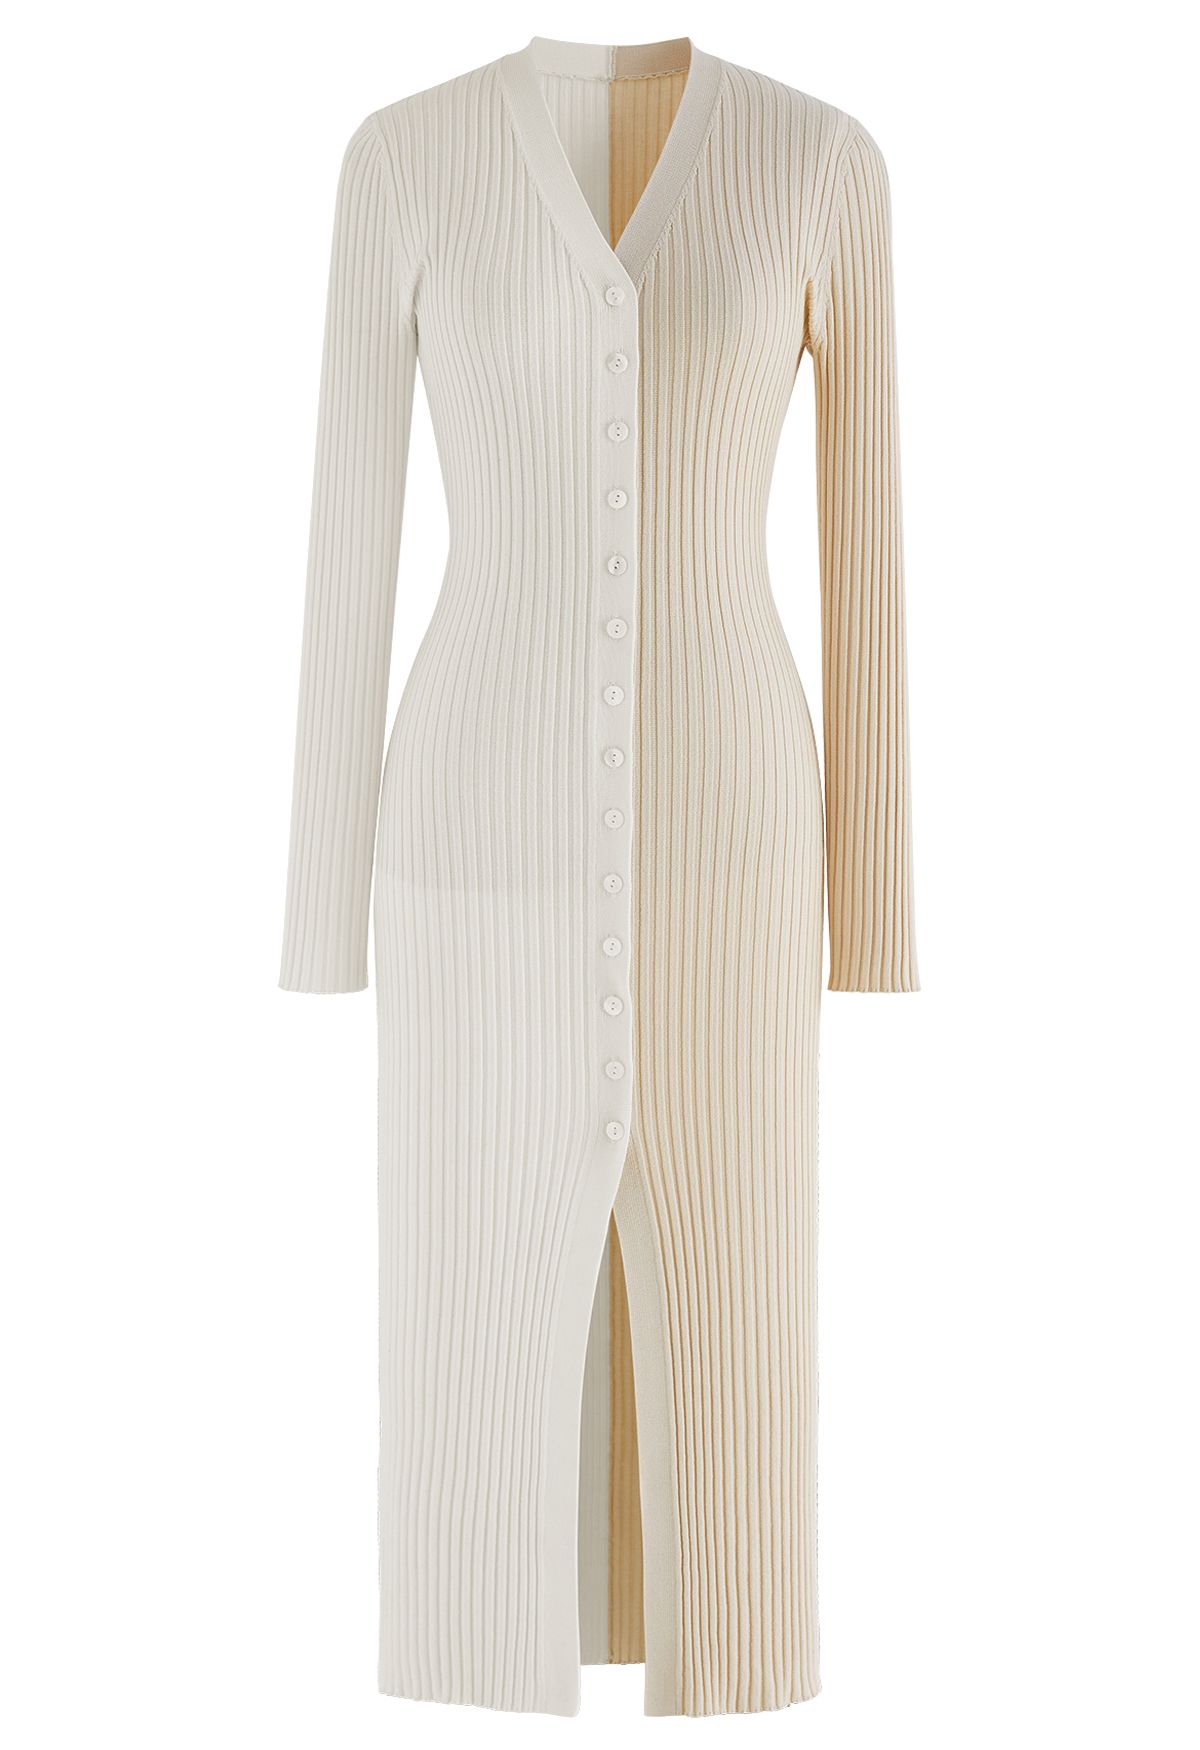 Button Down Two-Tone Spliced Bodycon Knit Dress in Cream - Retro, Indie ...